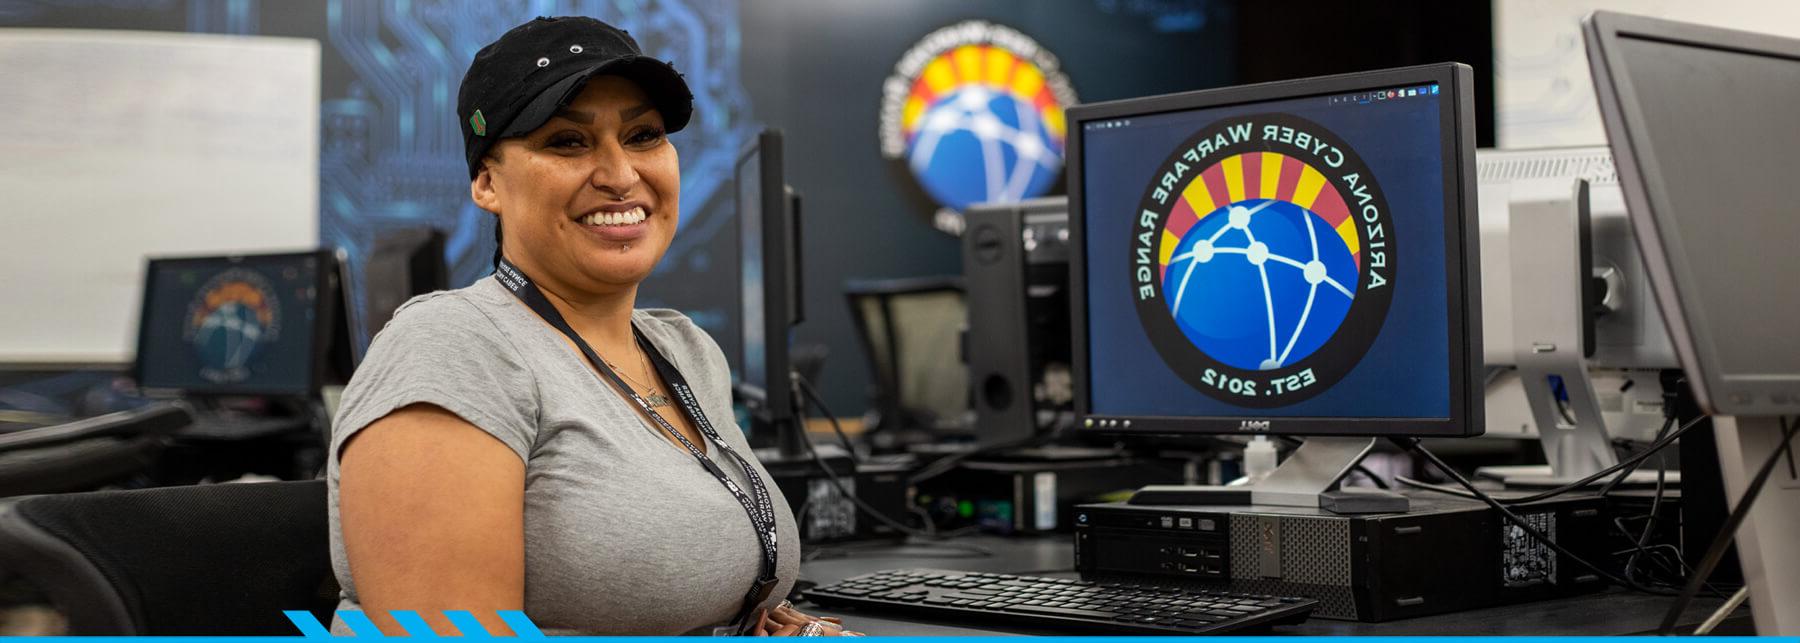 Aurora Sardina坐在东校区网络安全中心的电脑终端前，对着镜头微笑.